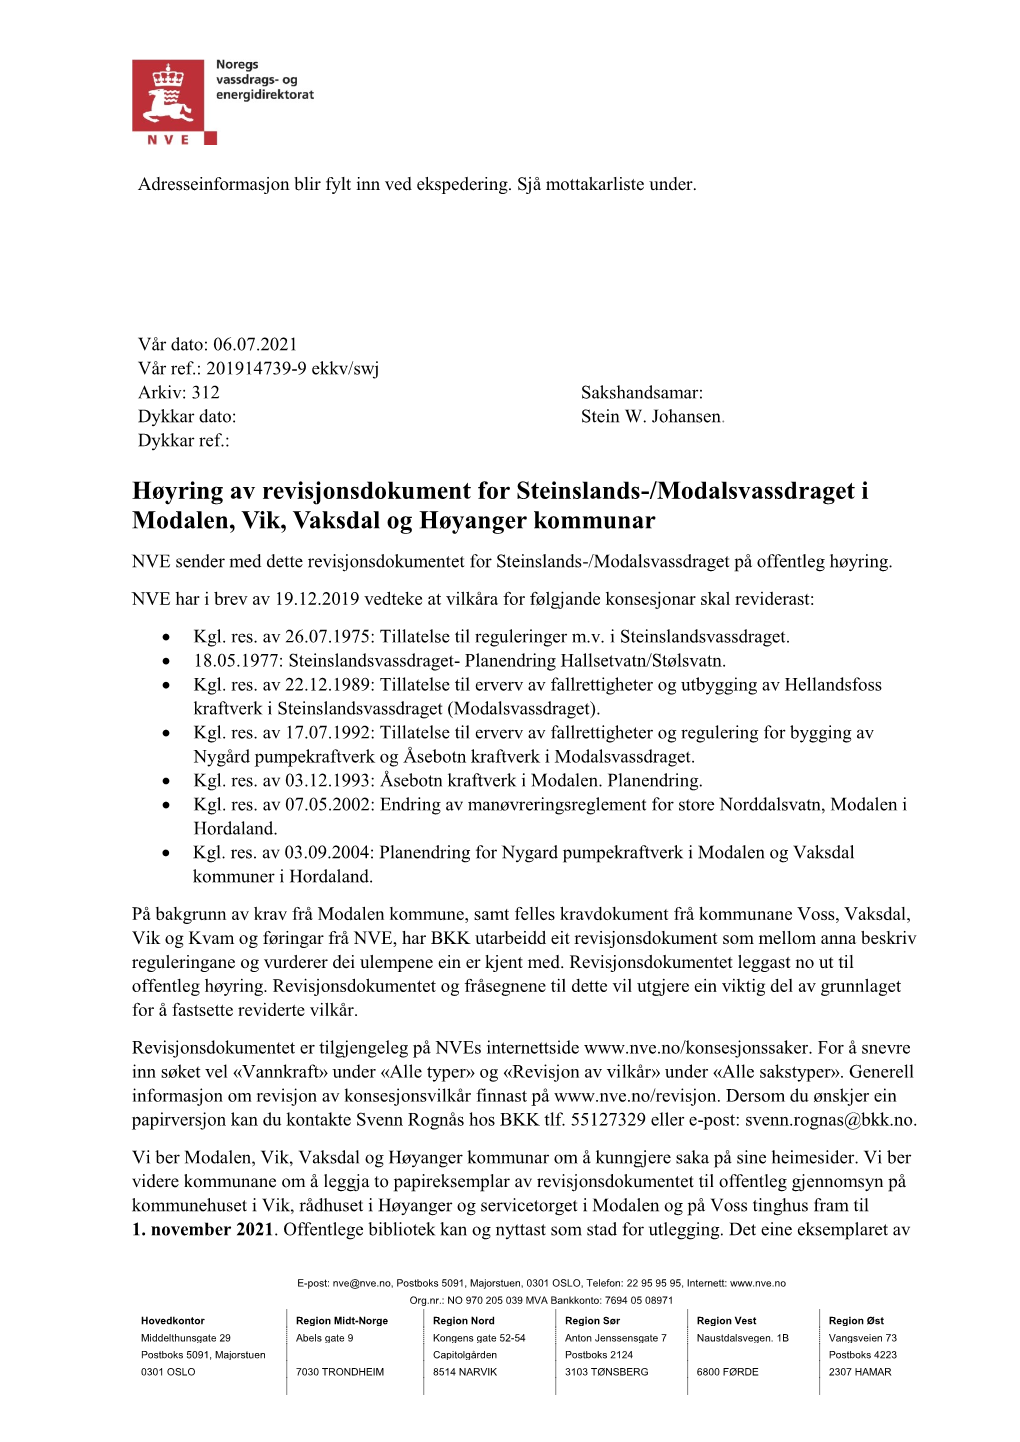 Høyring Av Revisjonsdokument for Steinslands-/Modalsvassdraget I Modalen, Vik, Vaksdal Og Høyanger Kommunar